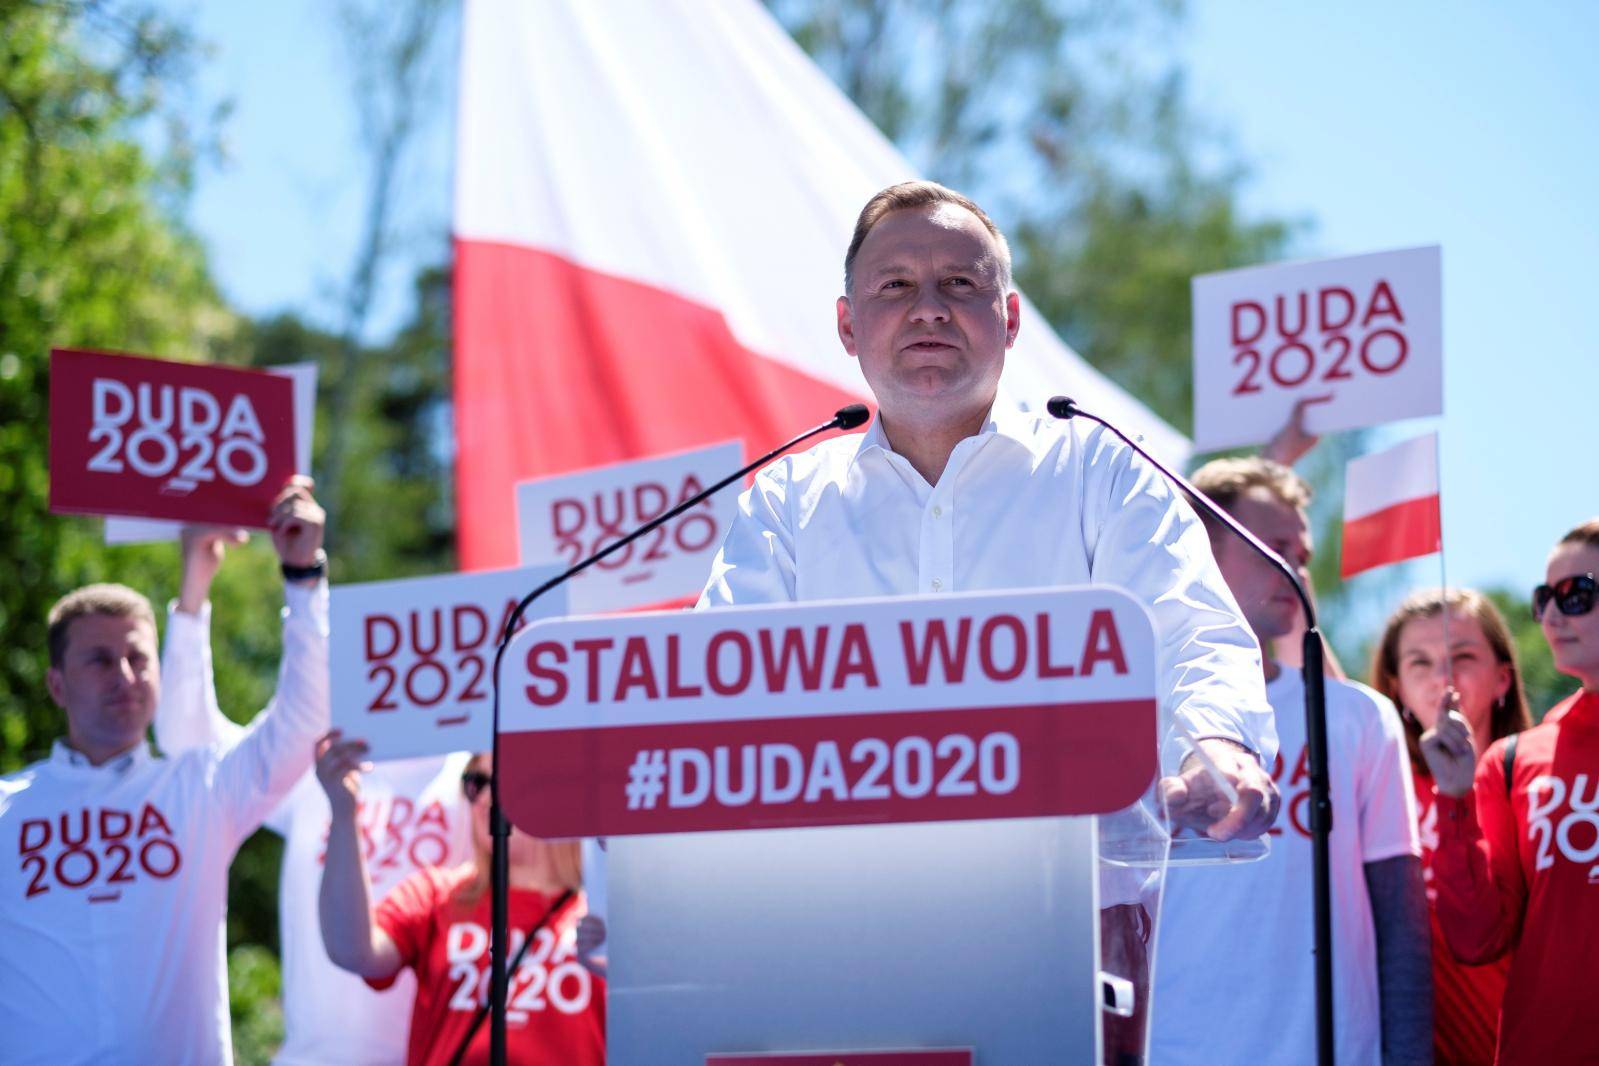 Polish President Andrzej Duda attends election rally in Stalowa Wola